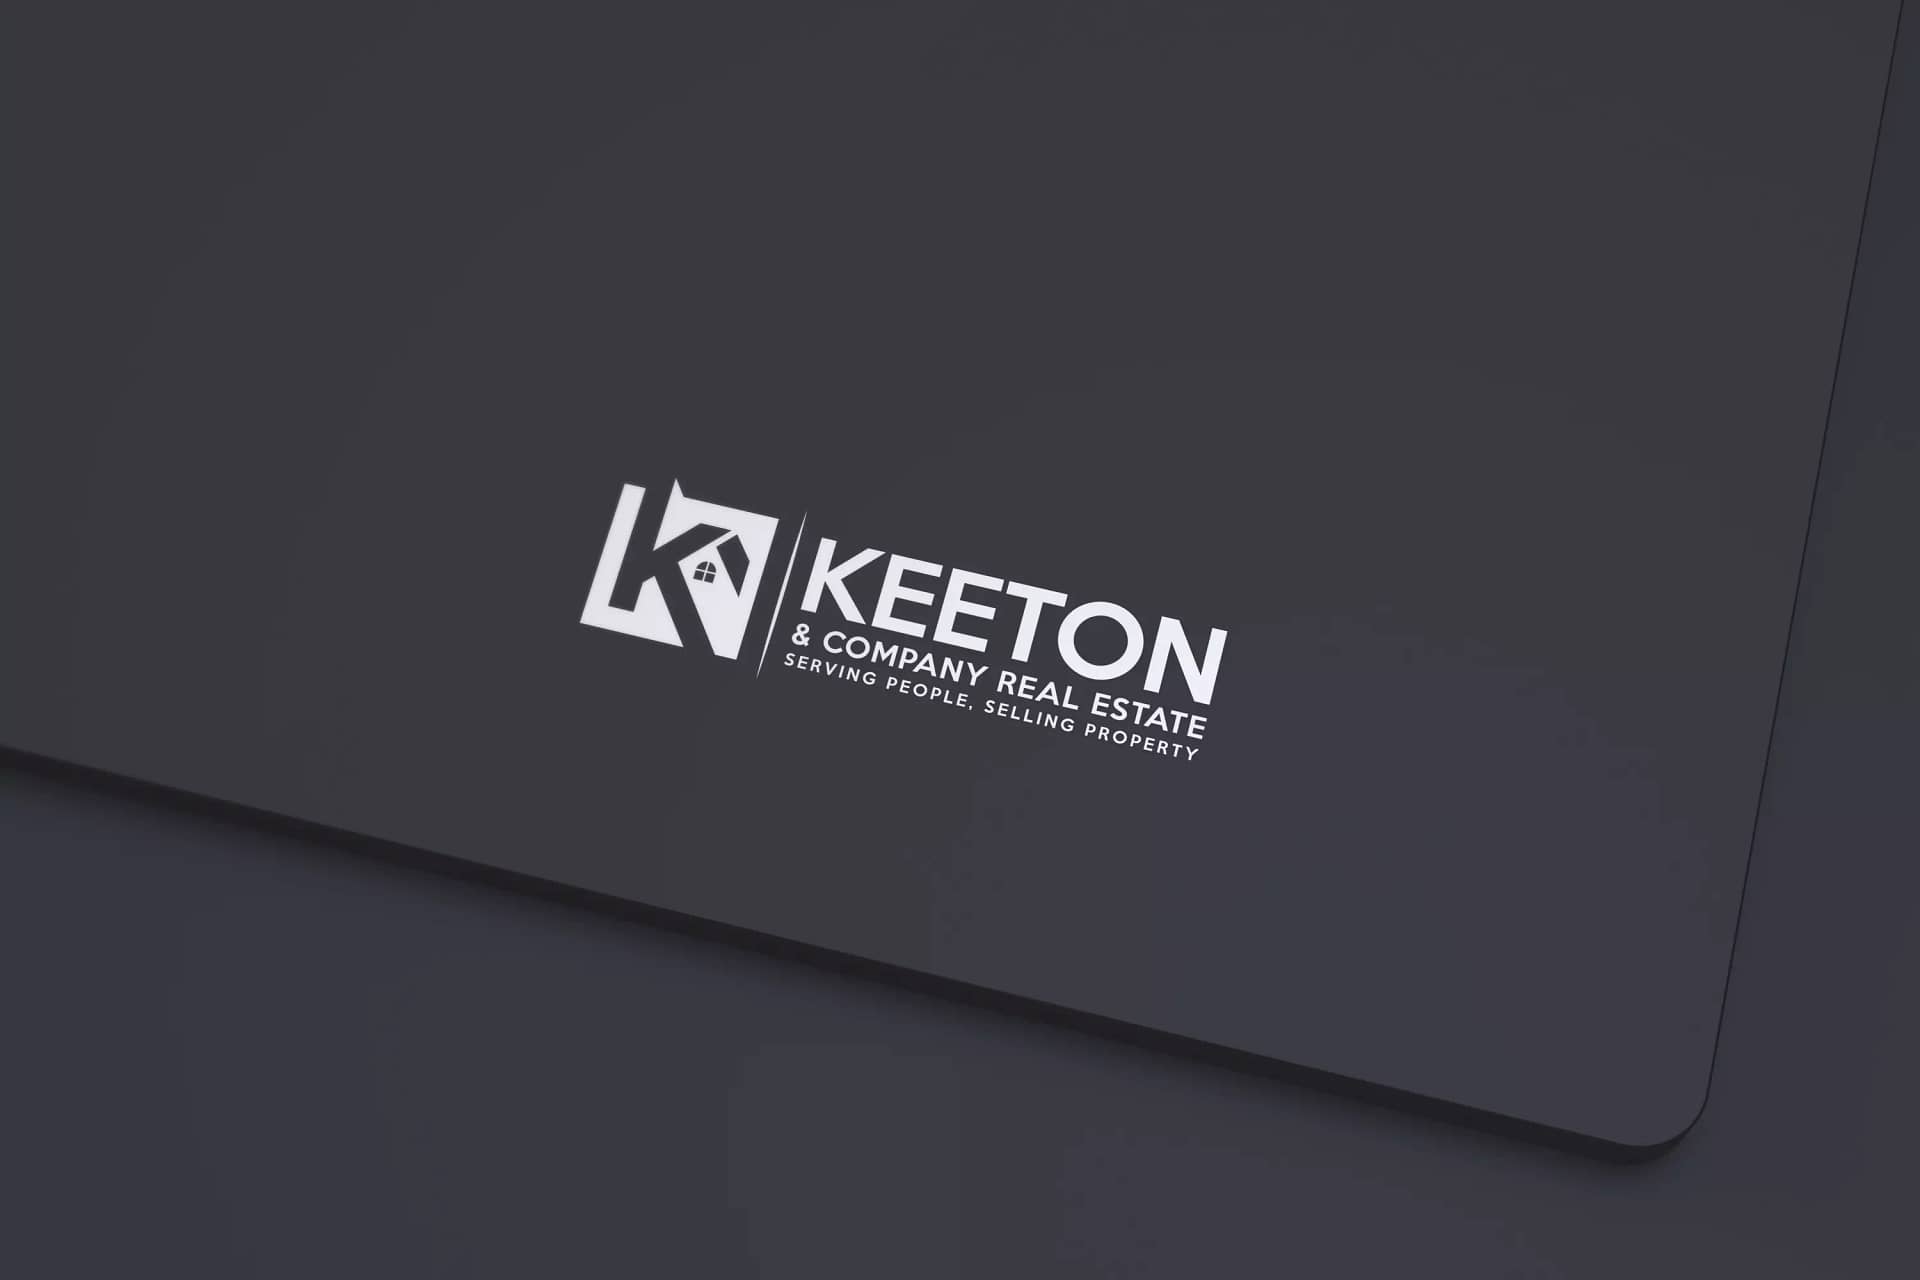 Keeton-logo